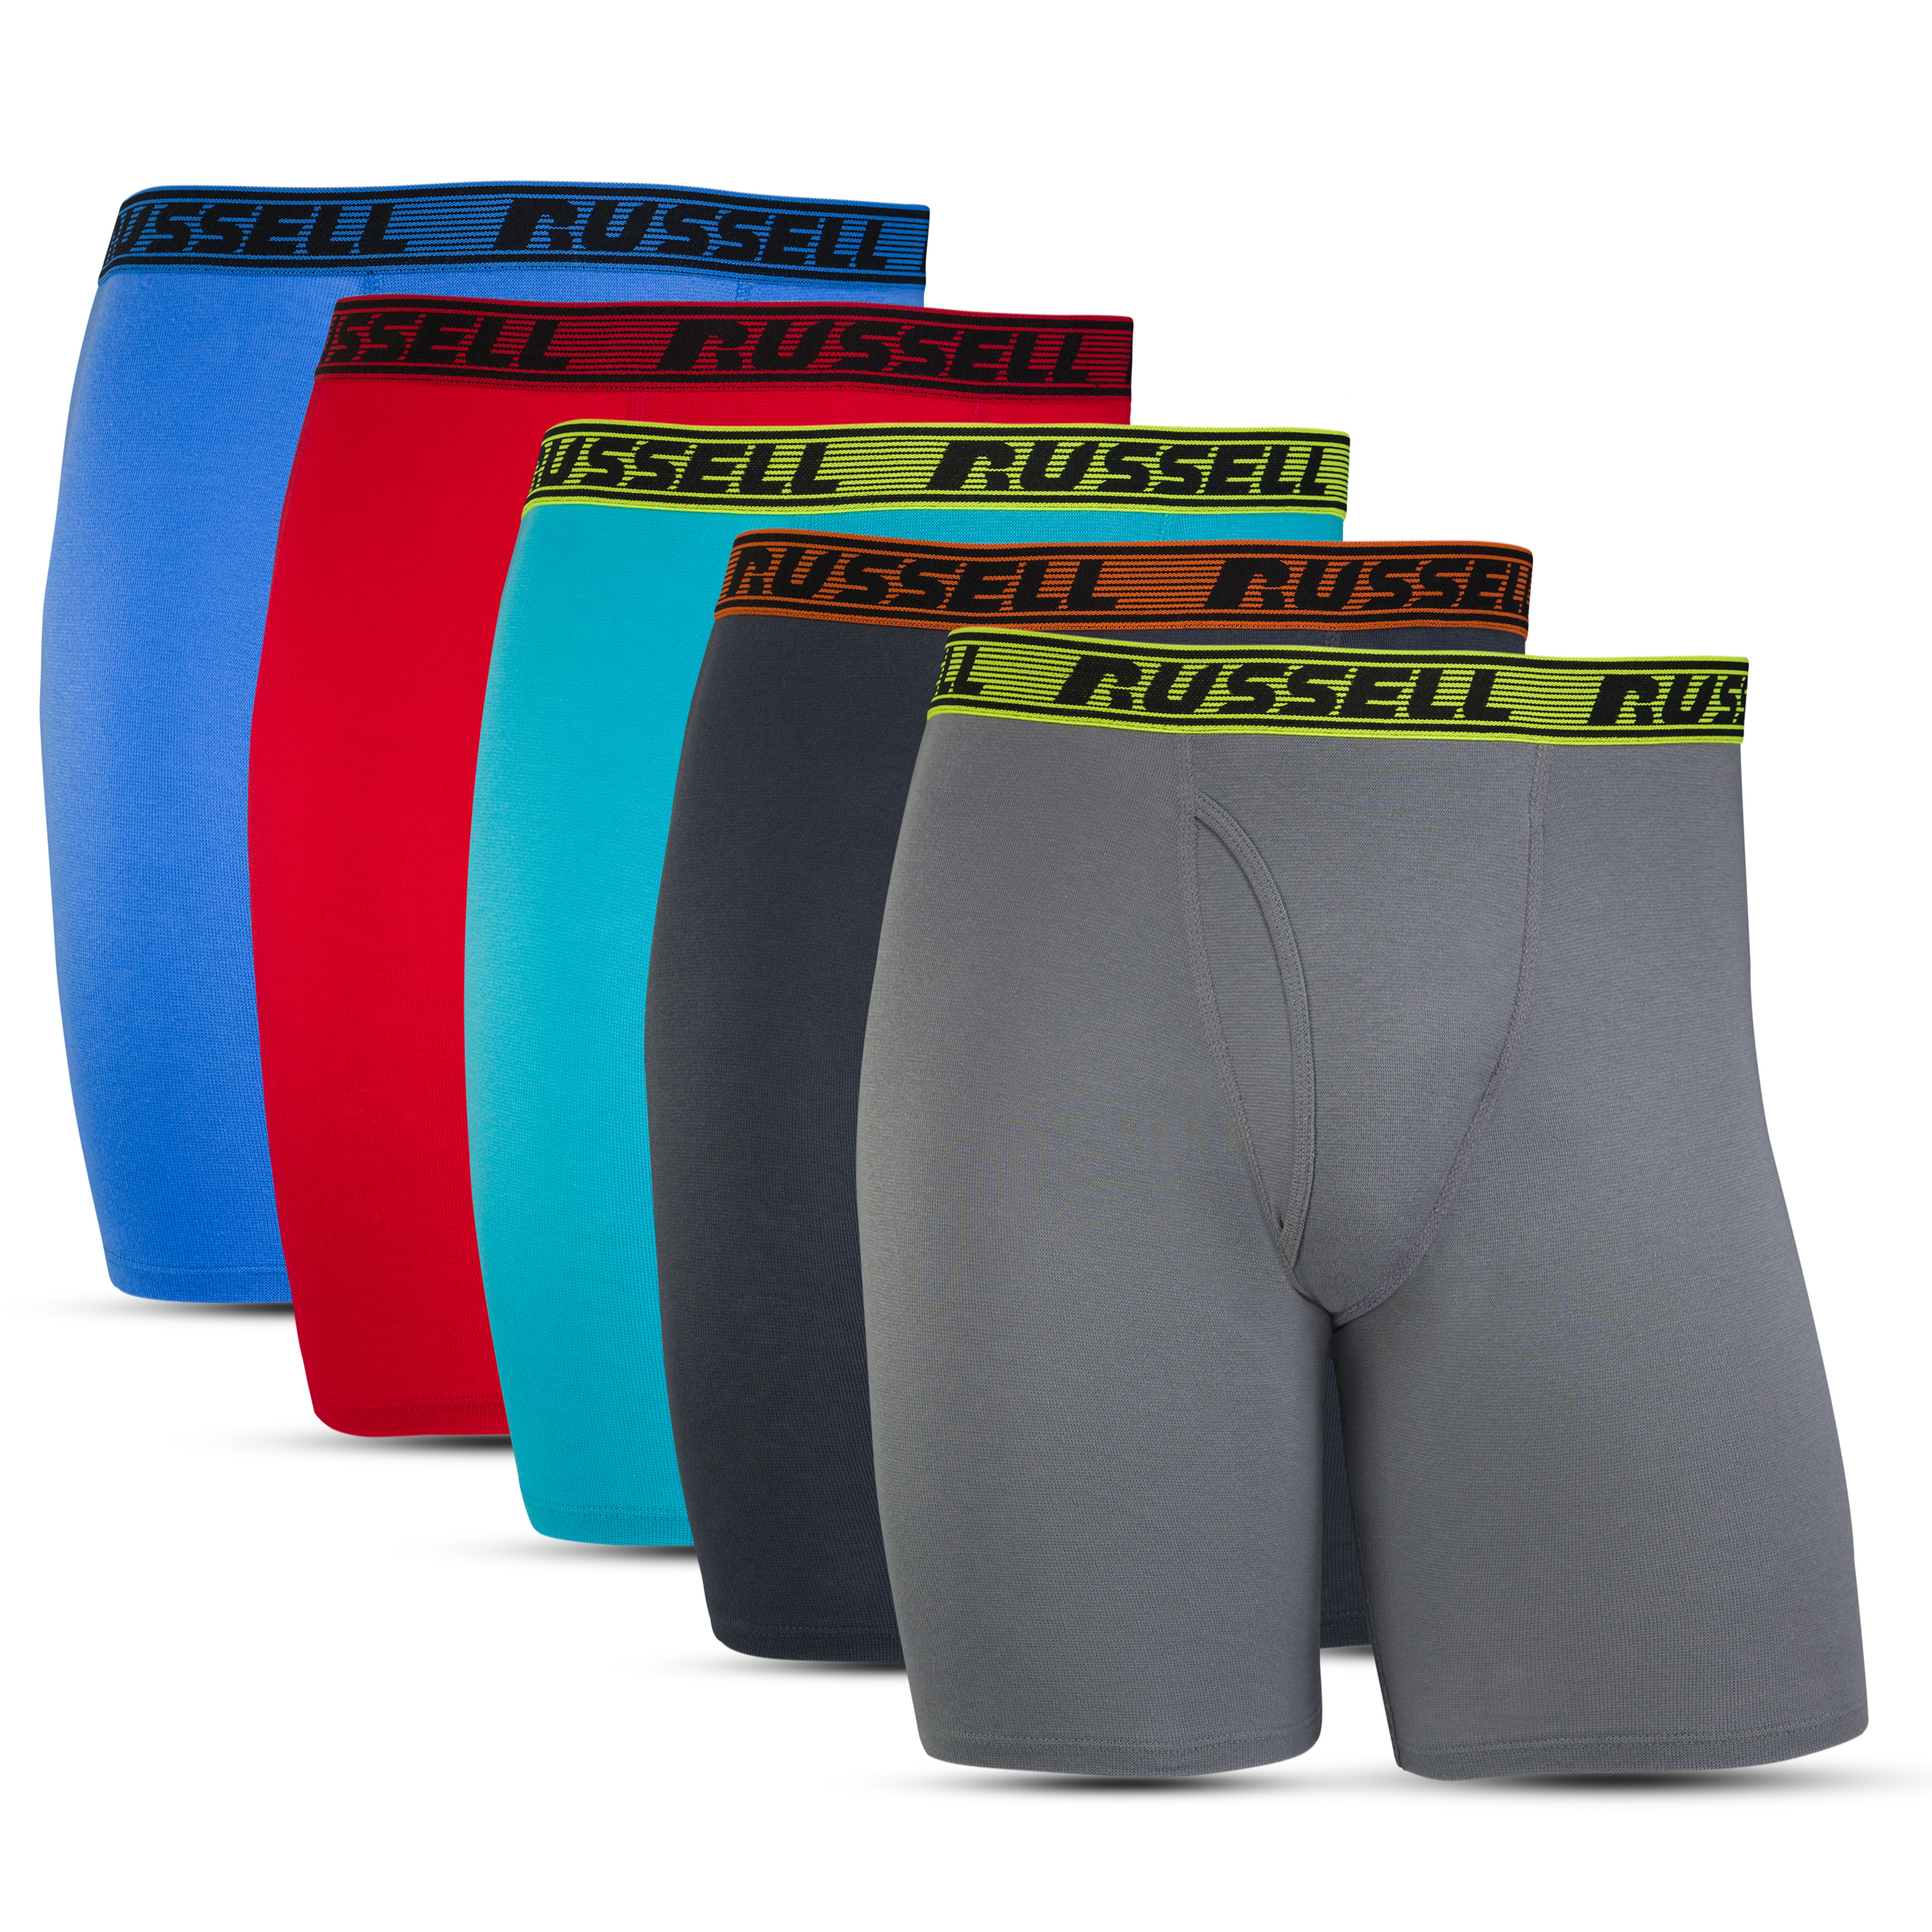 Russell Men's Comfort Performance Sport Briefs, 4 Pack – BrickSeek